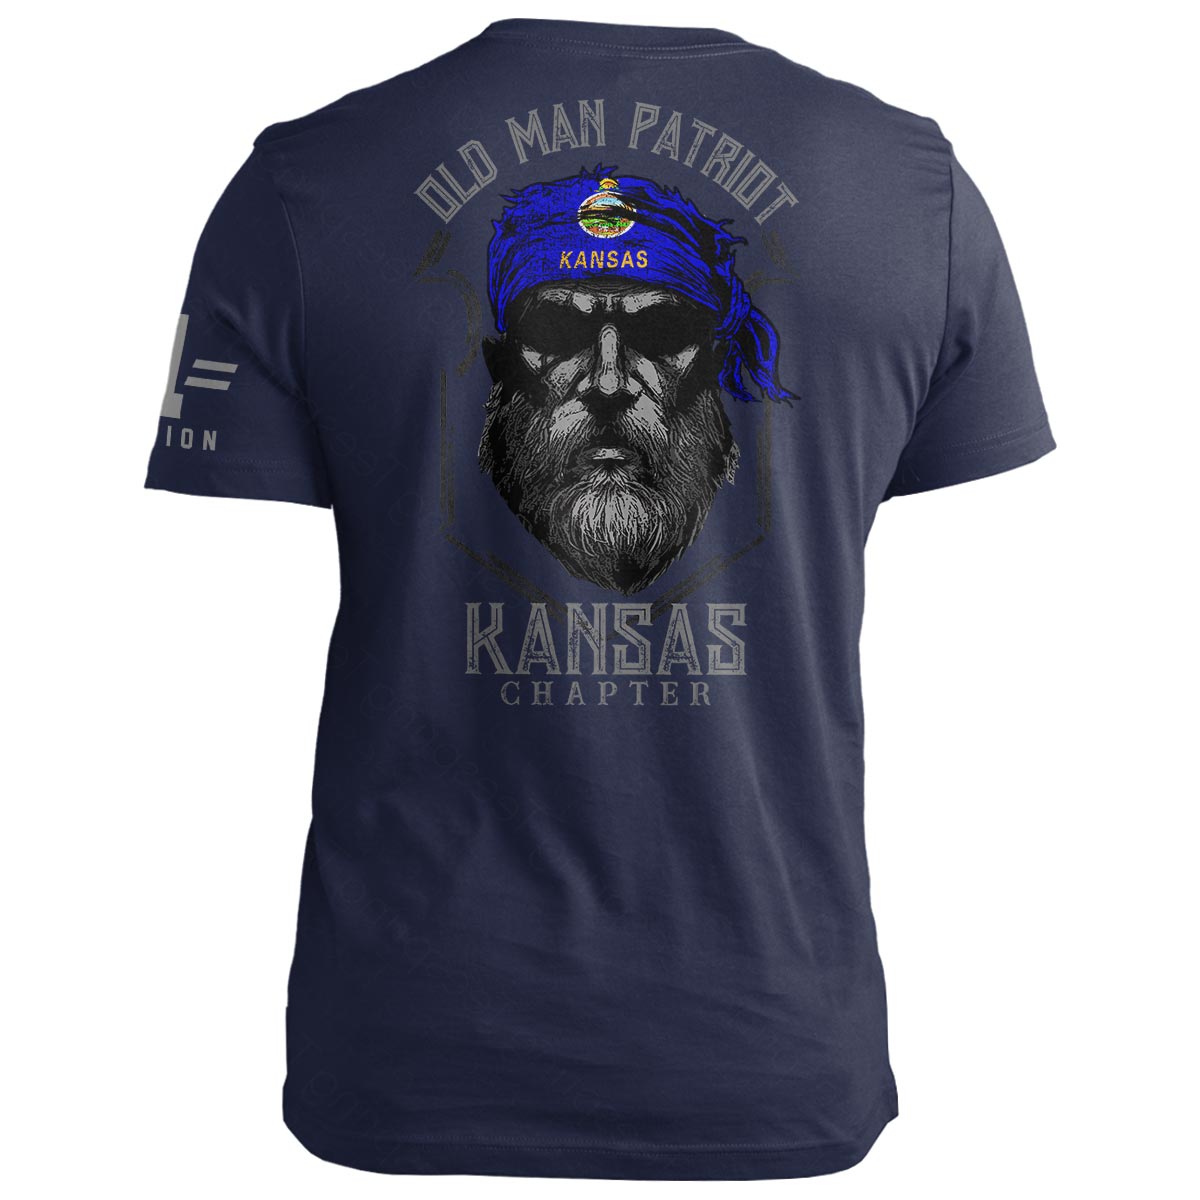 Kansas Old Man Patriot